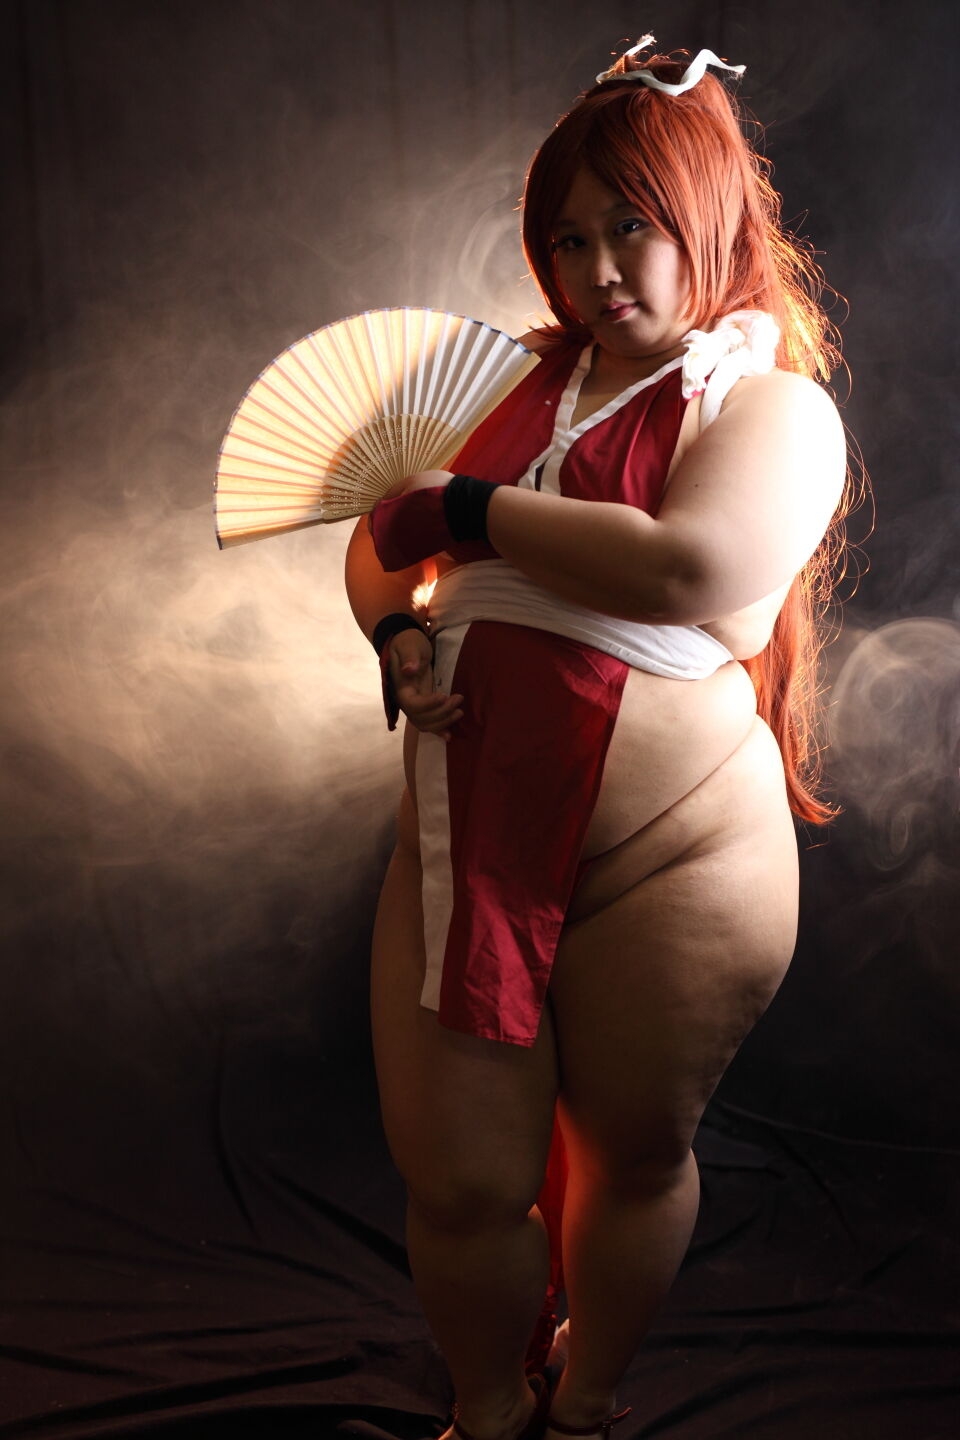 (渡辺さくらん) FIGHT FAT LADY (Sakuran Watanabe) (Mai Shiranui - Fatal Fury) (Chun-Li - Street Fighter) 166